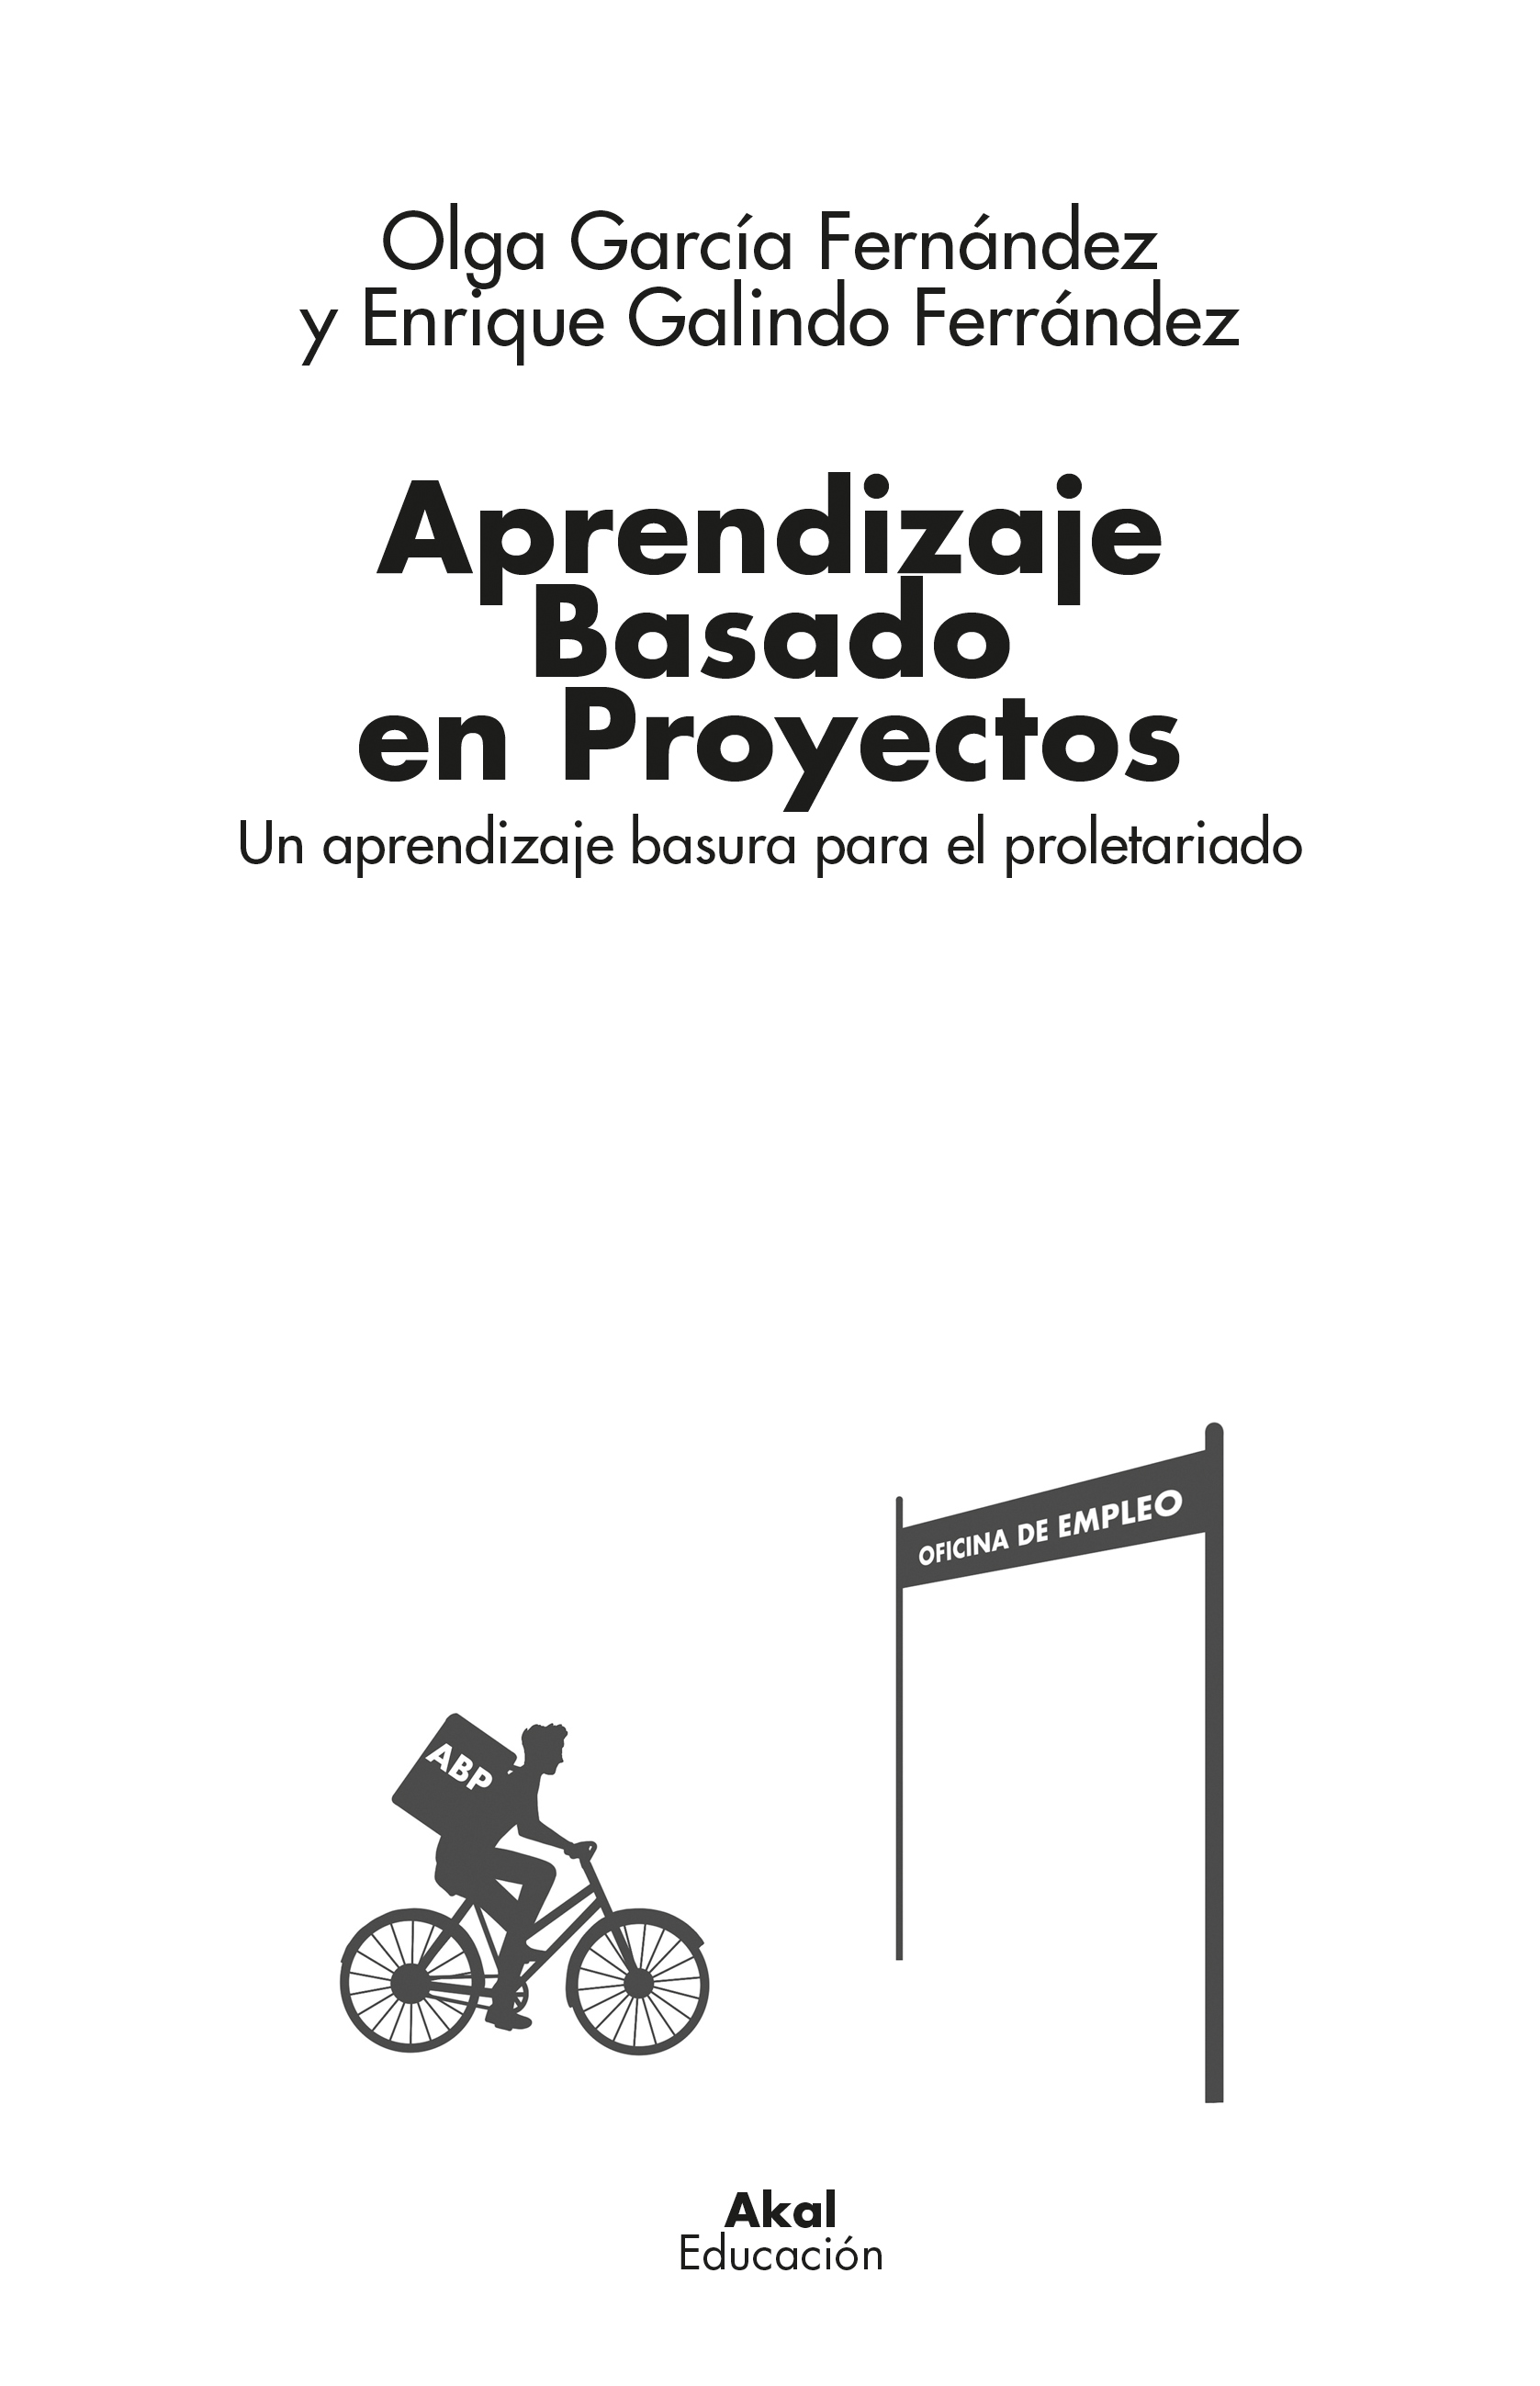 Aprendizaje basado en proyectos - Olga García Fernández | Enrique Galindo Ferrández